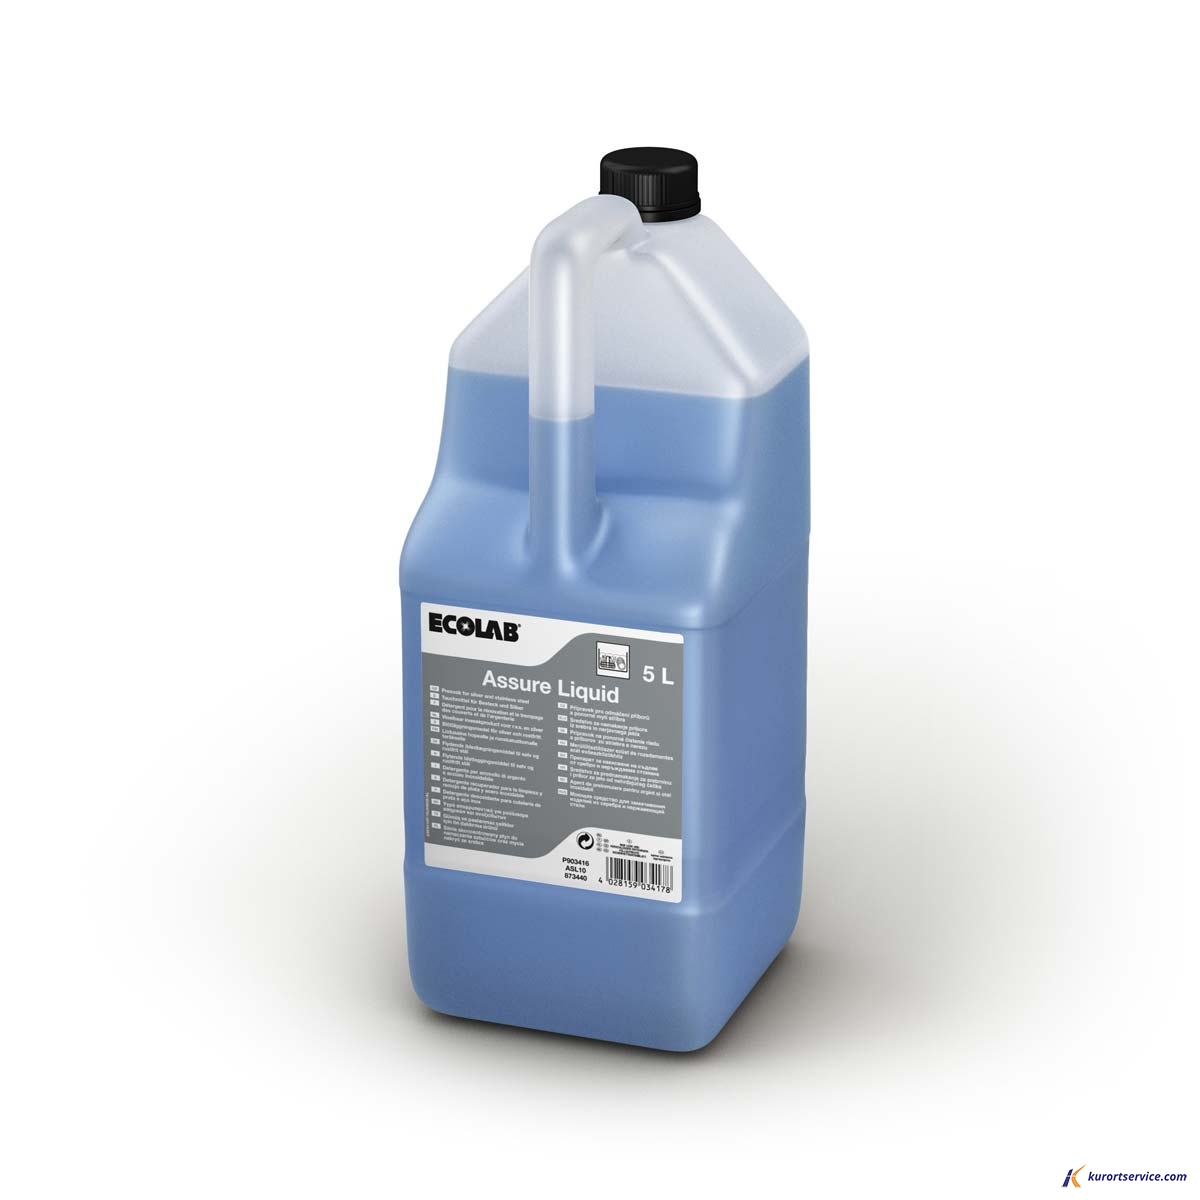 Ecolab Assure Liquid жидкое средство для замач стол приборов и серебра 5л